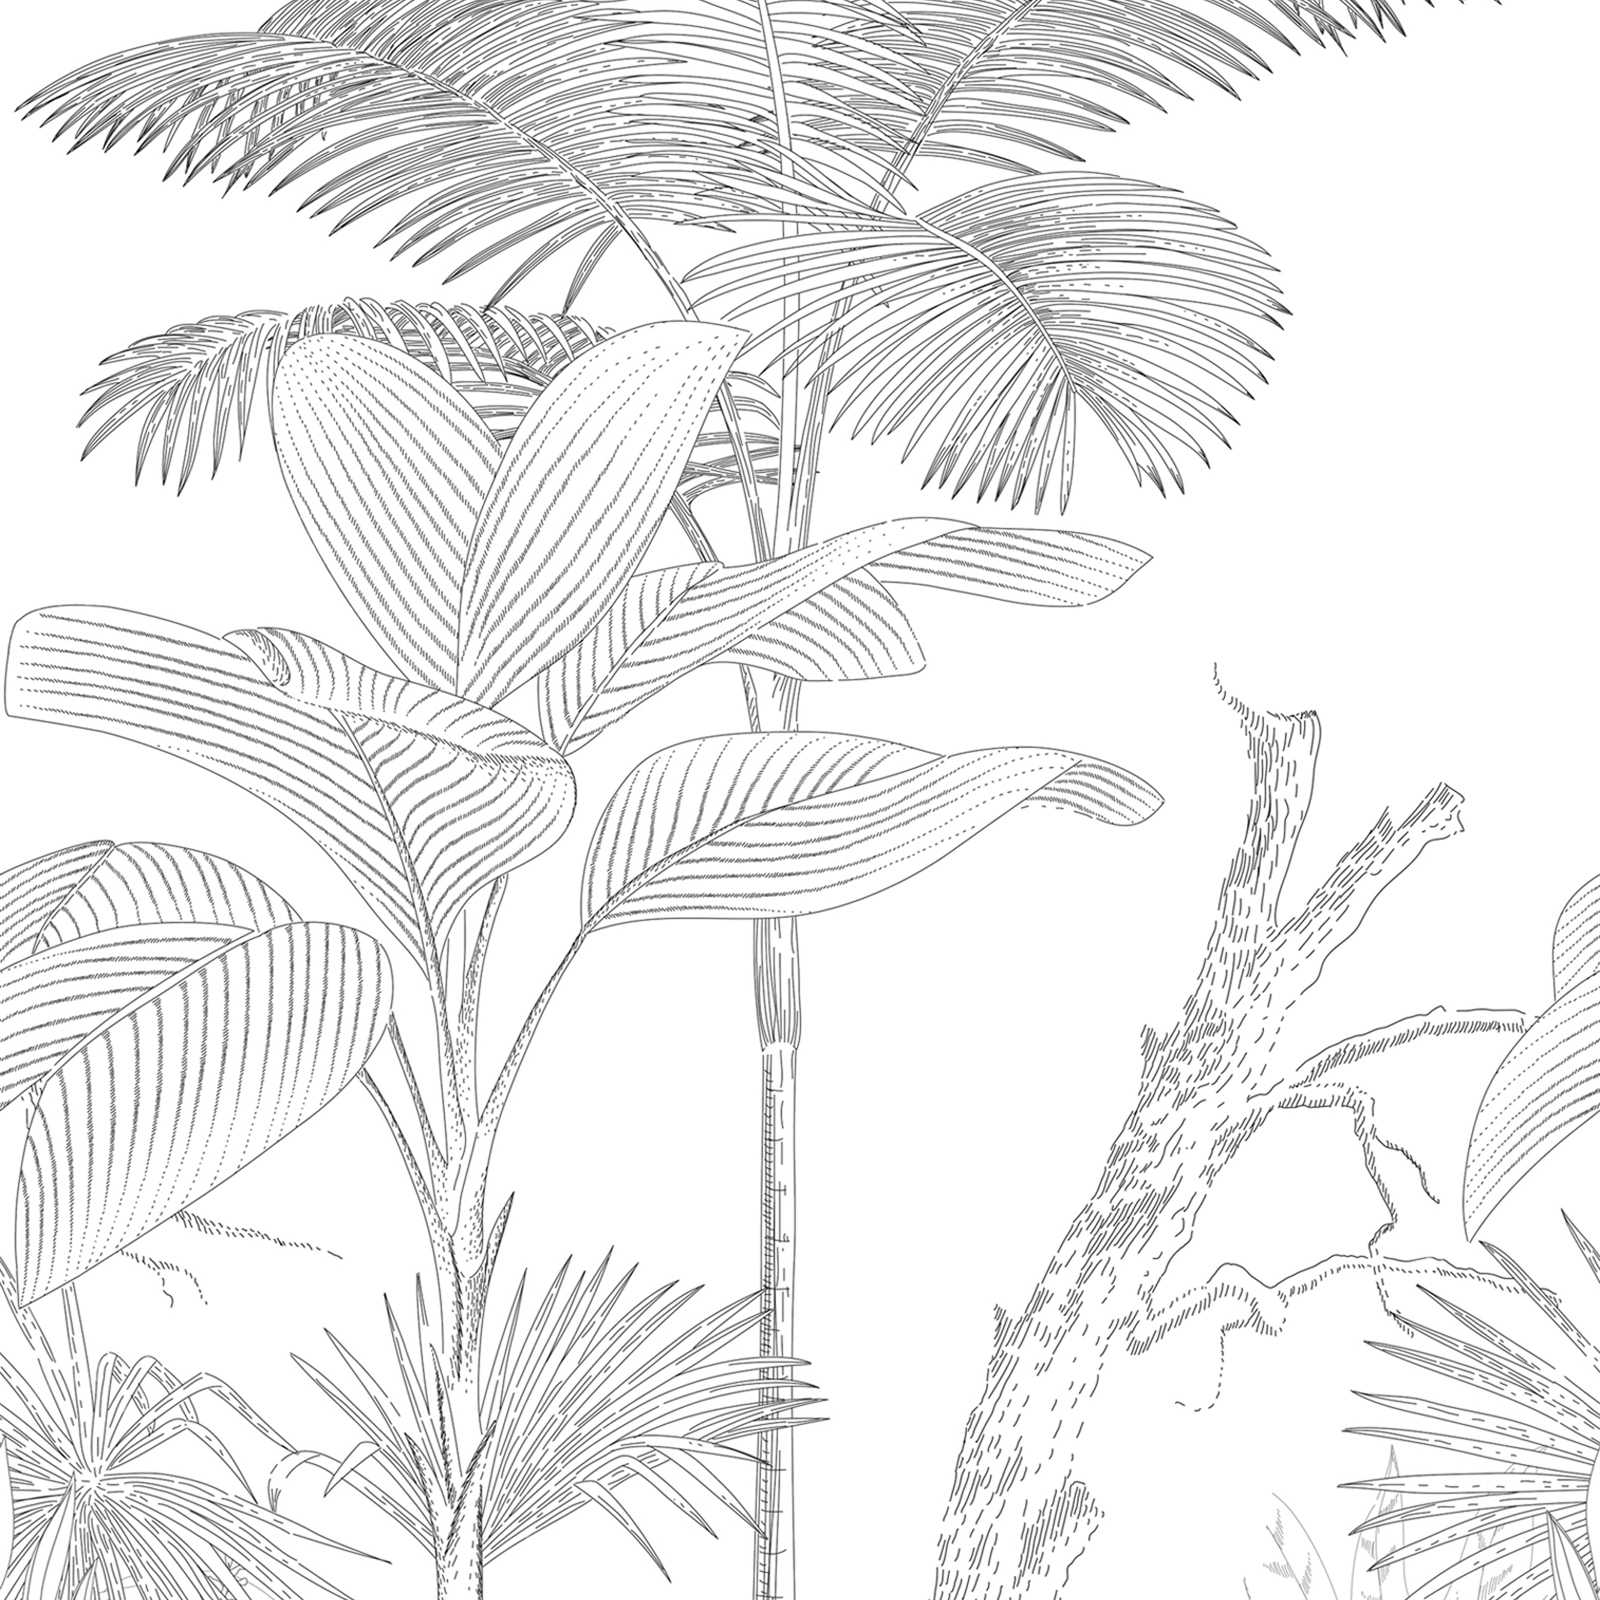 Vliesbehang met getekend jungle-motief - zwart, wit
